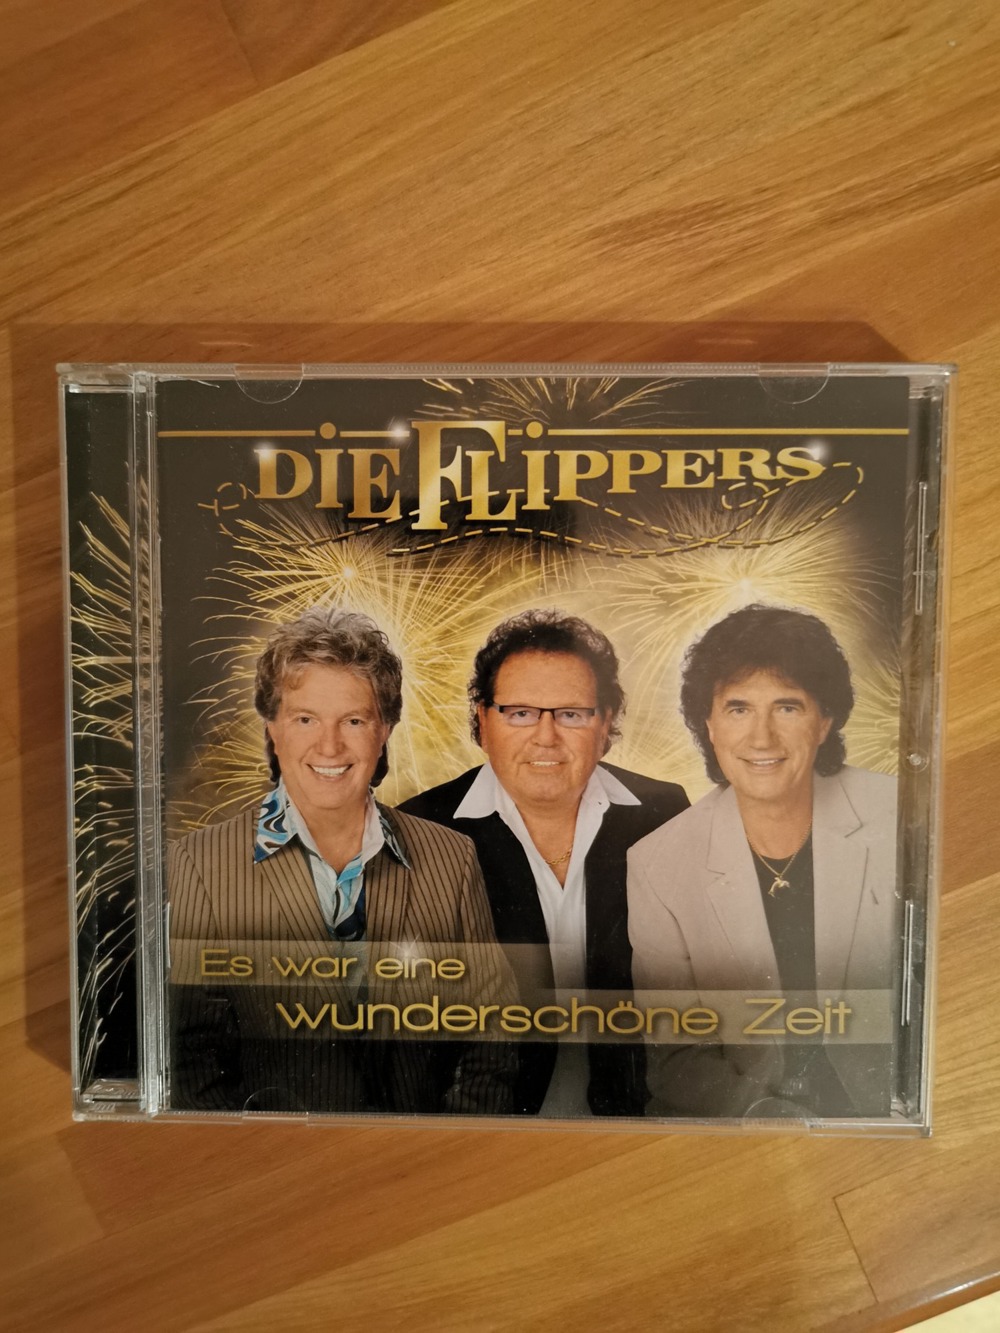 CD Die Flippers "Es war eine wunderschöne Zeit"